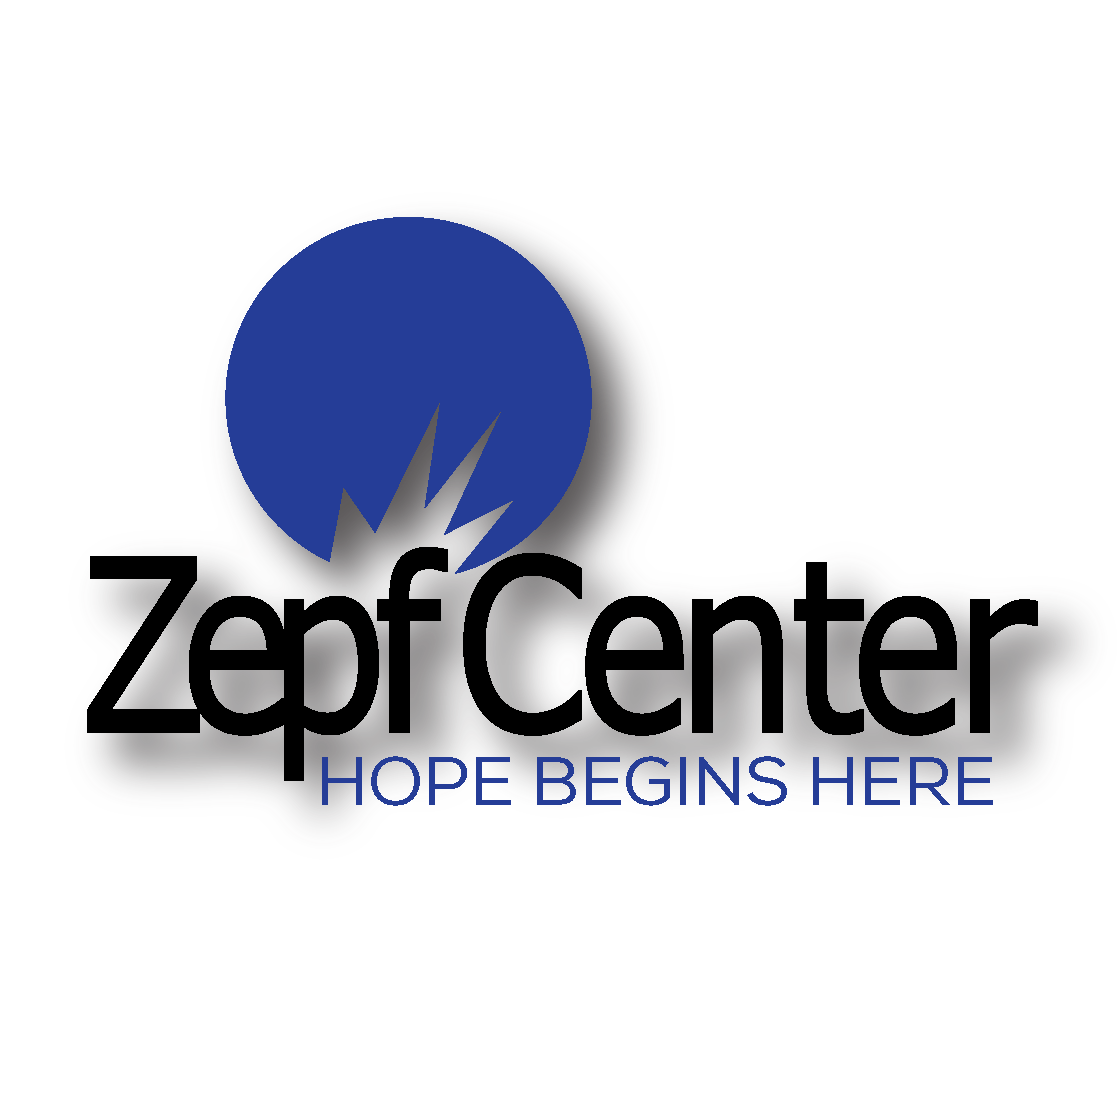 Zepf Center